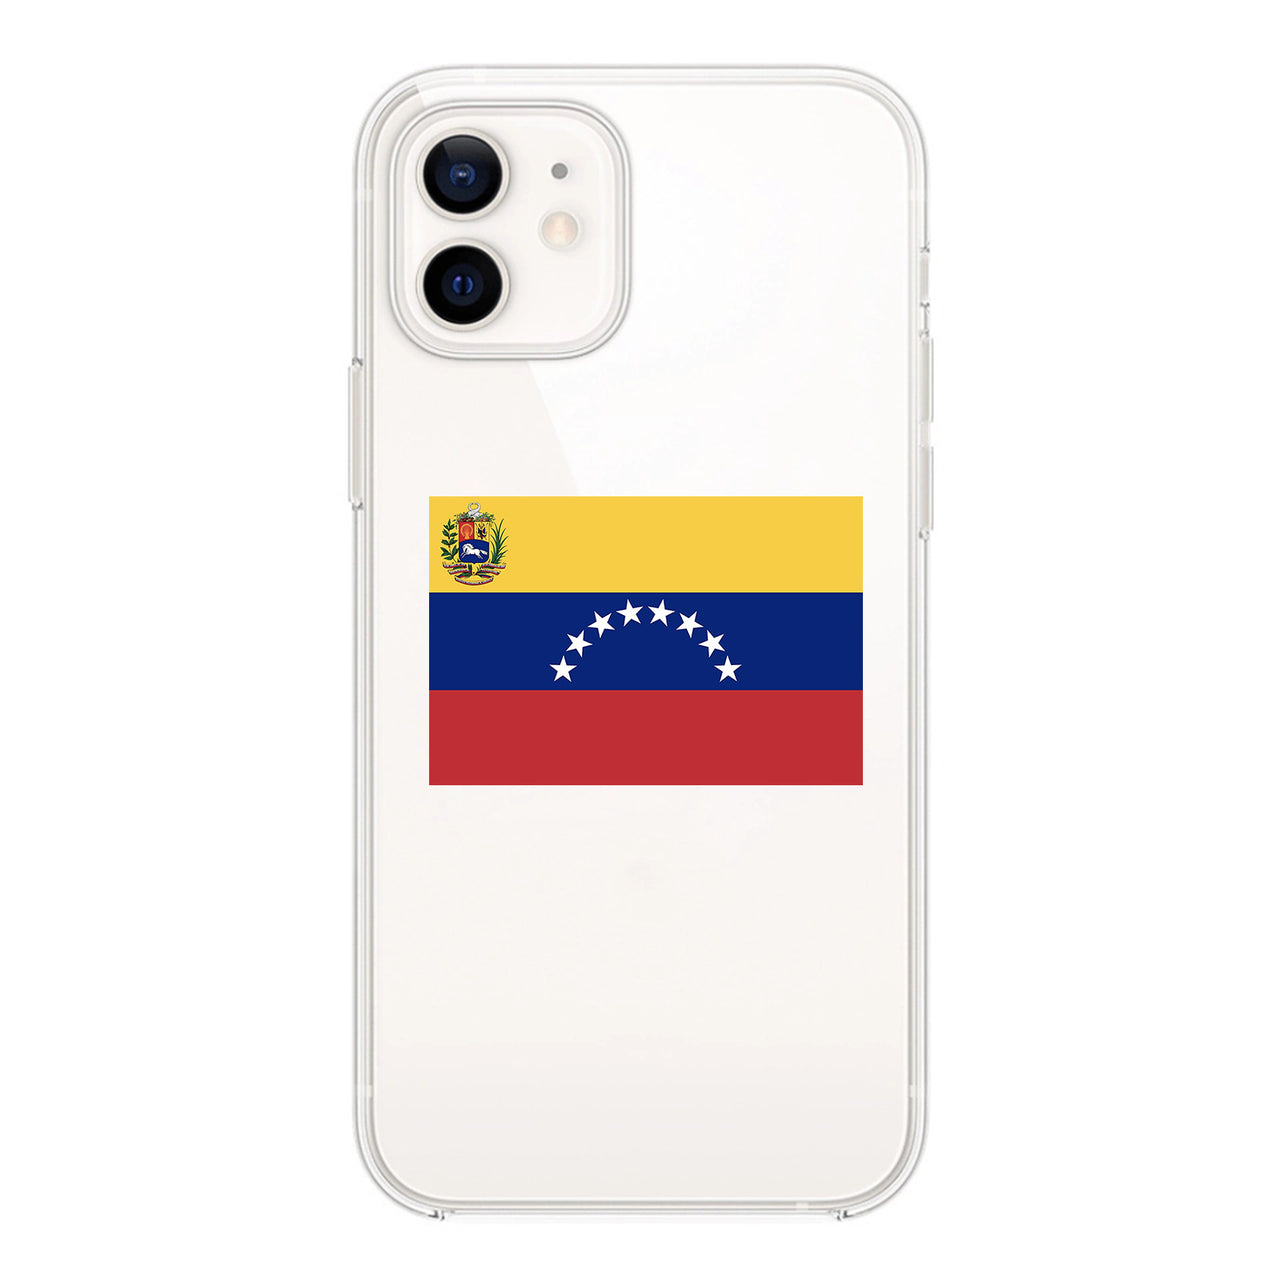 Venezuella Designed Transparent Silicone iPhone Cases